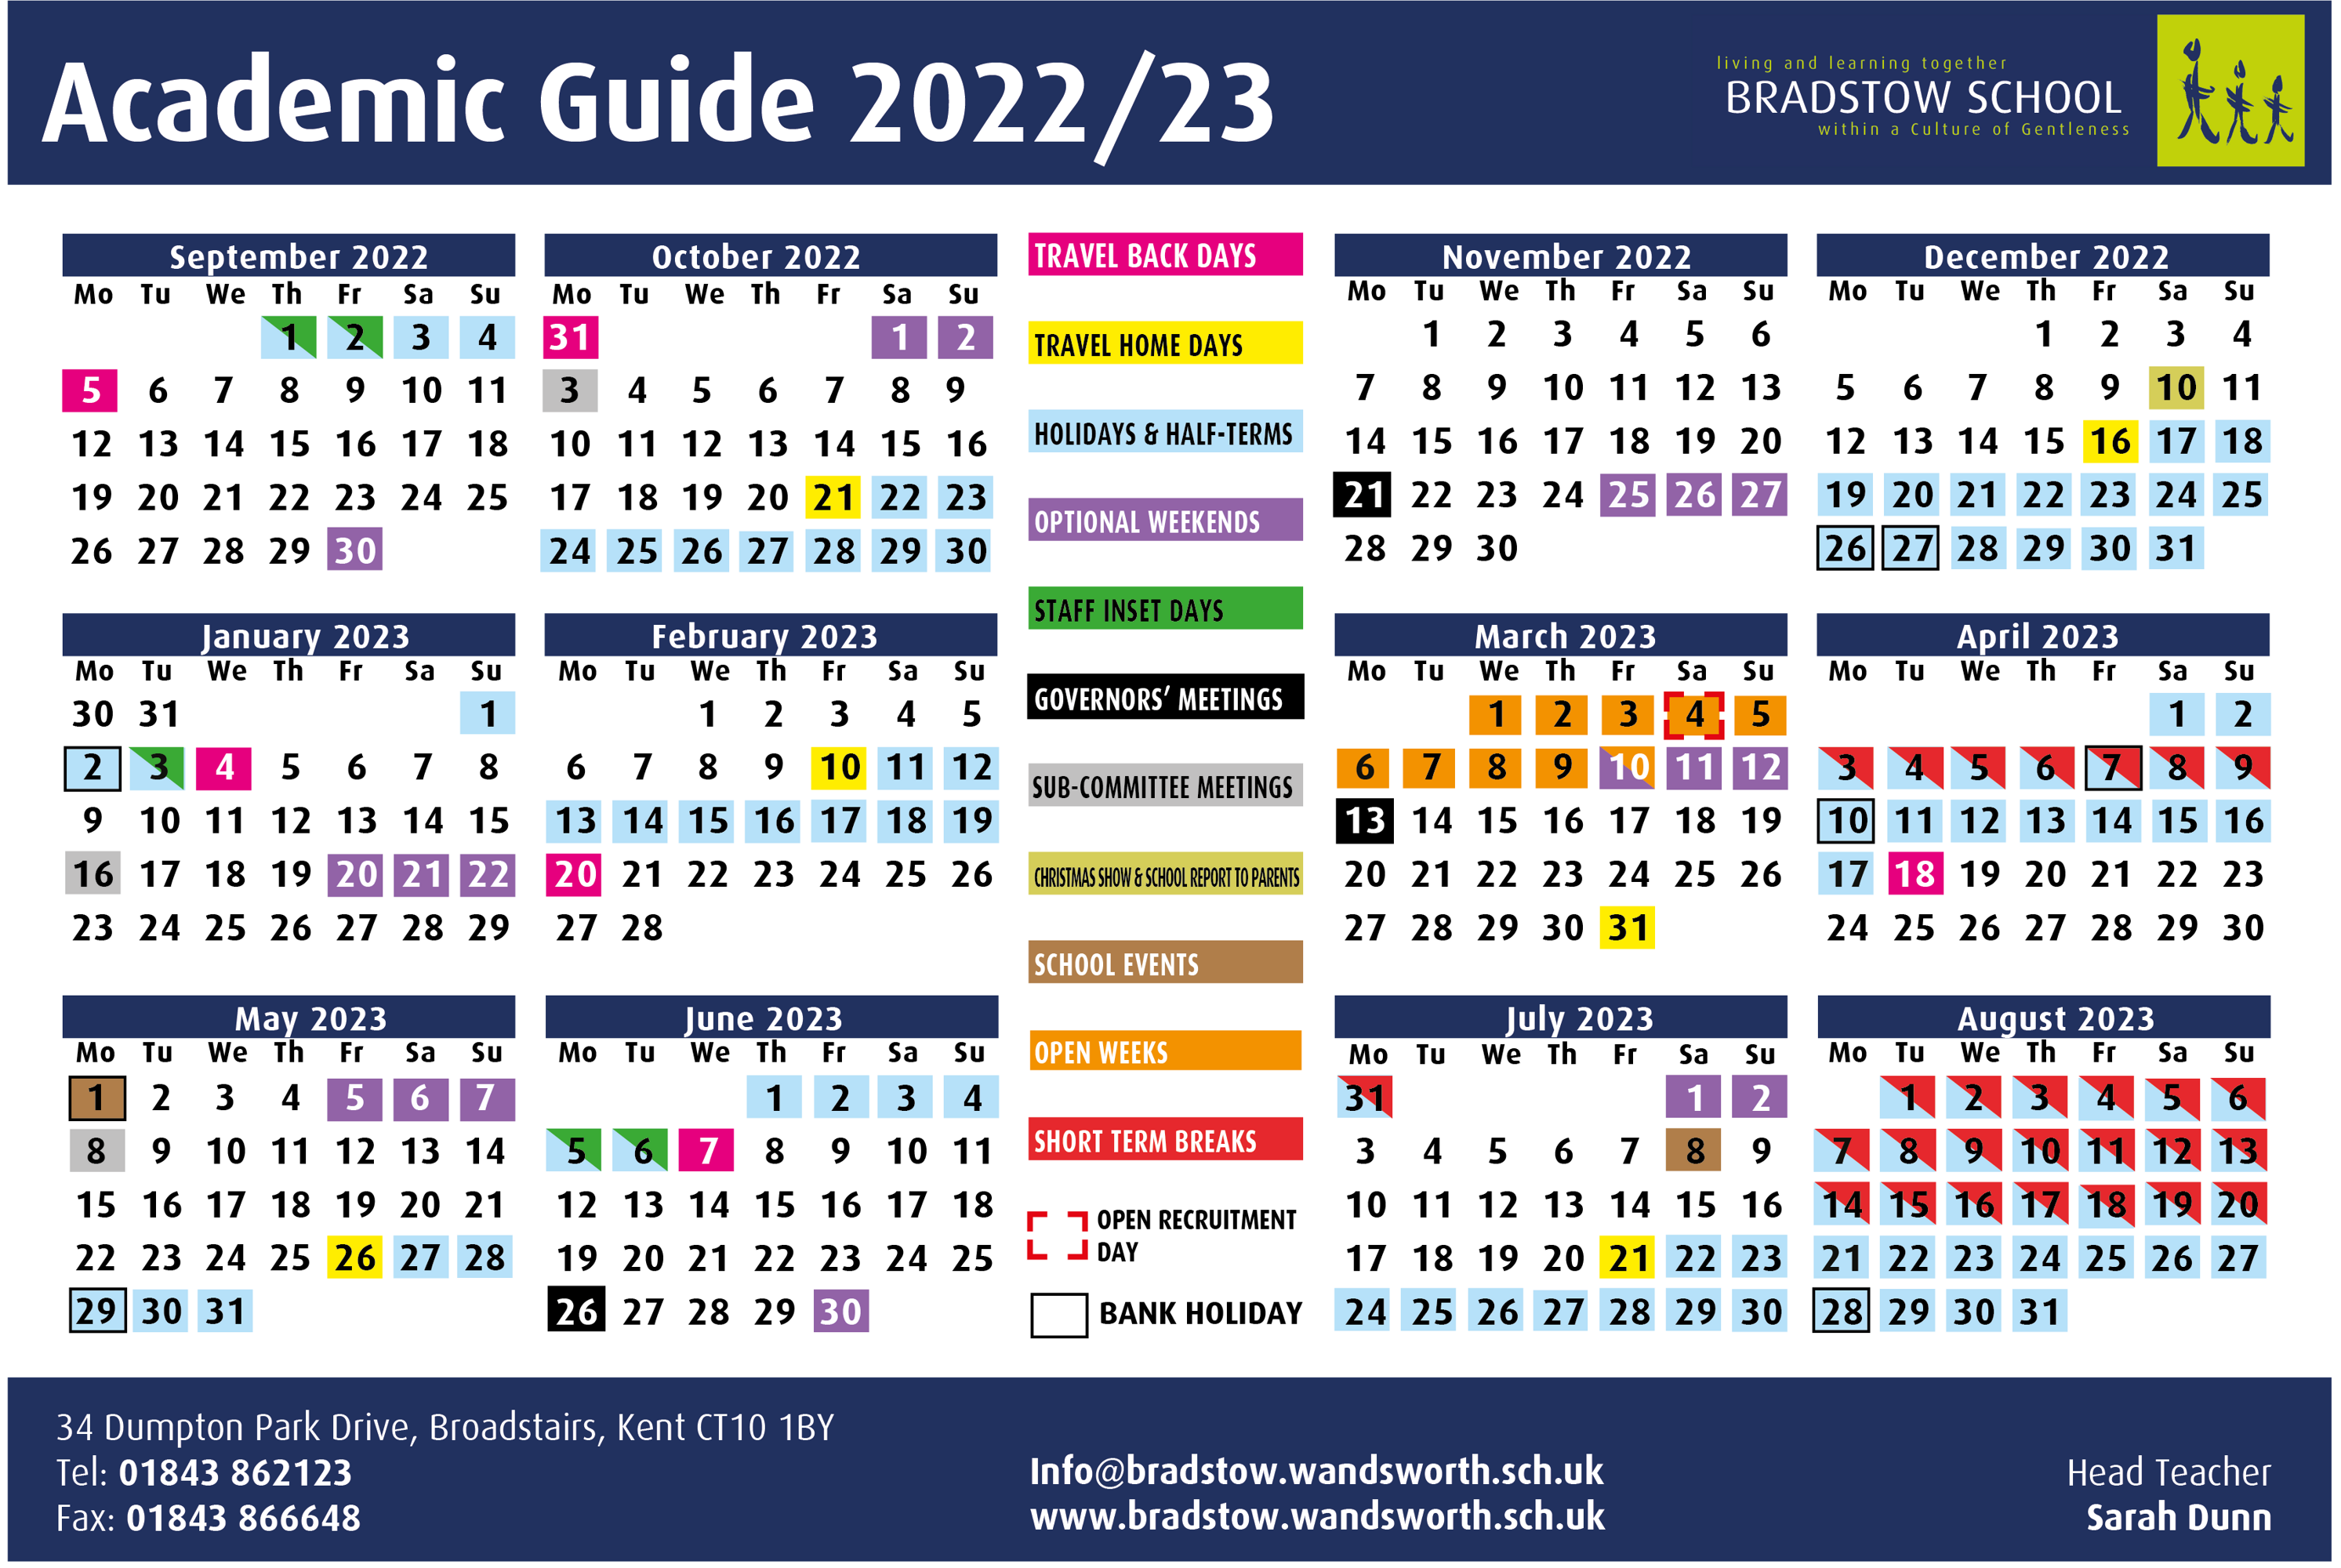 Calendar layout 2022 23 updated 23mar2022